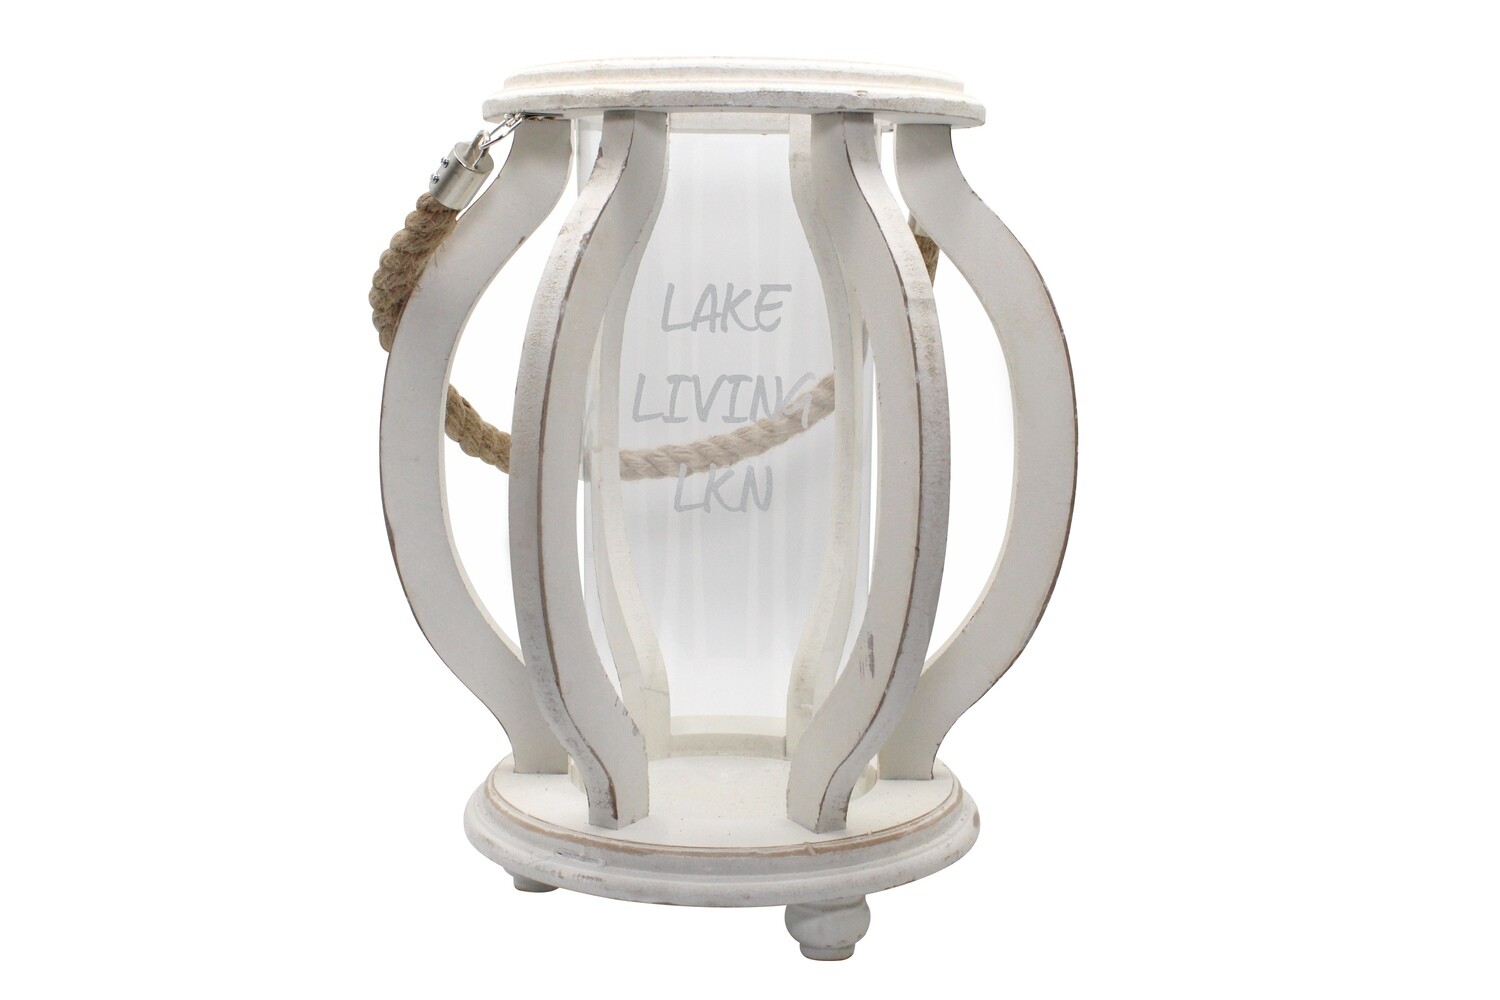 Personalized Wood Cutout Lantern with Saying